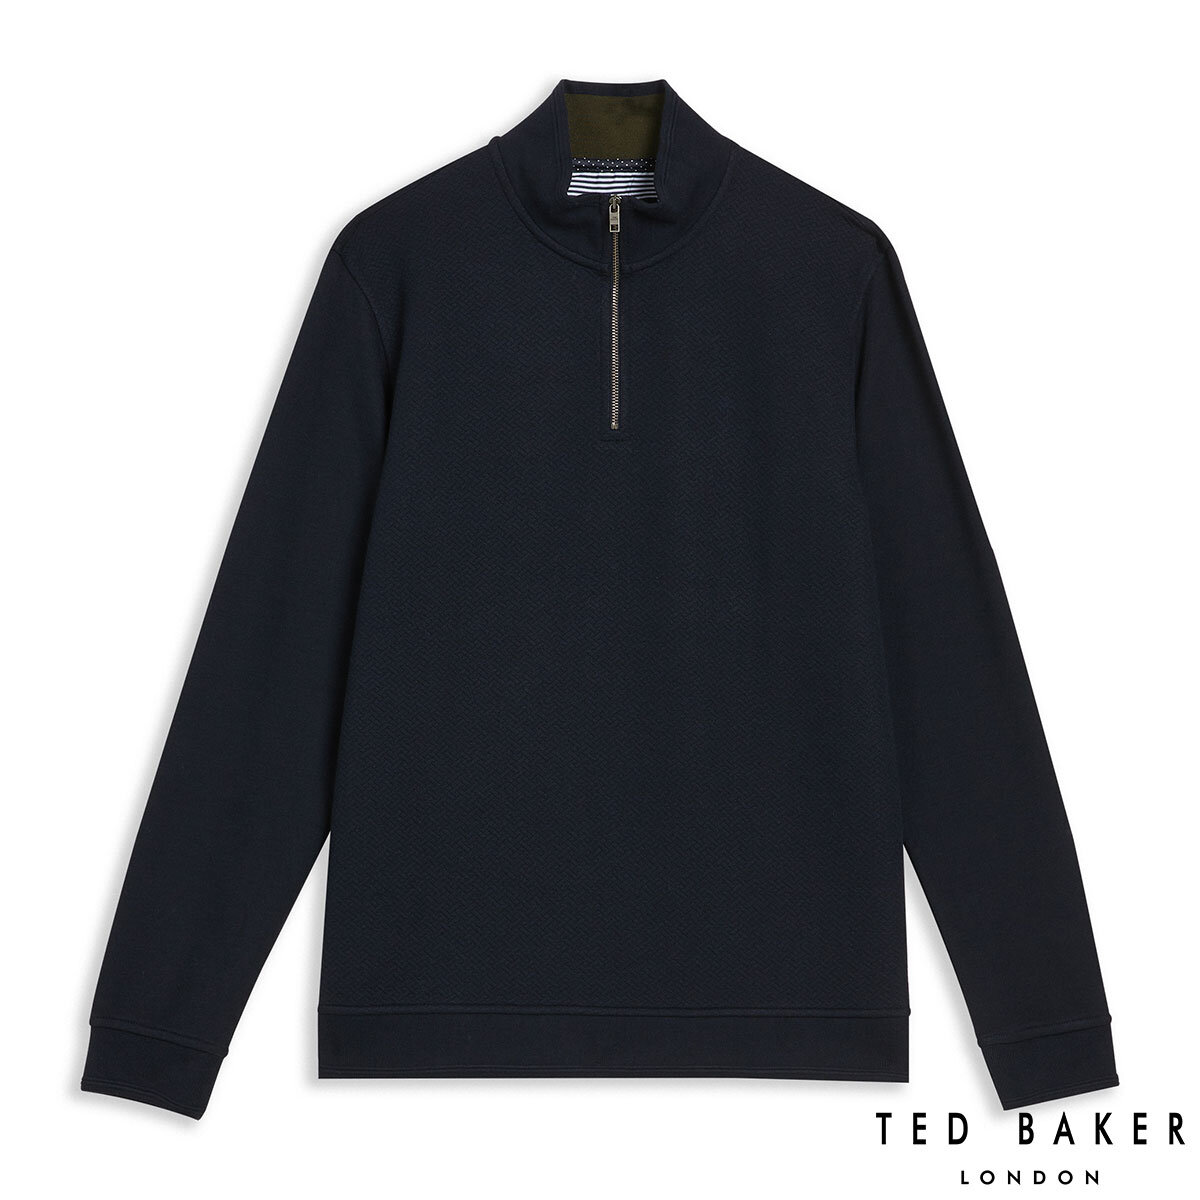 Ted Baker Men's Quarter Zip Sweatshirt in Navy, Large | C...